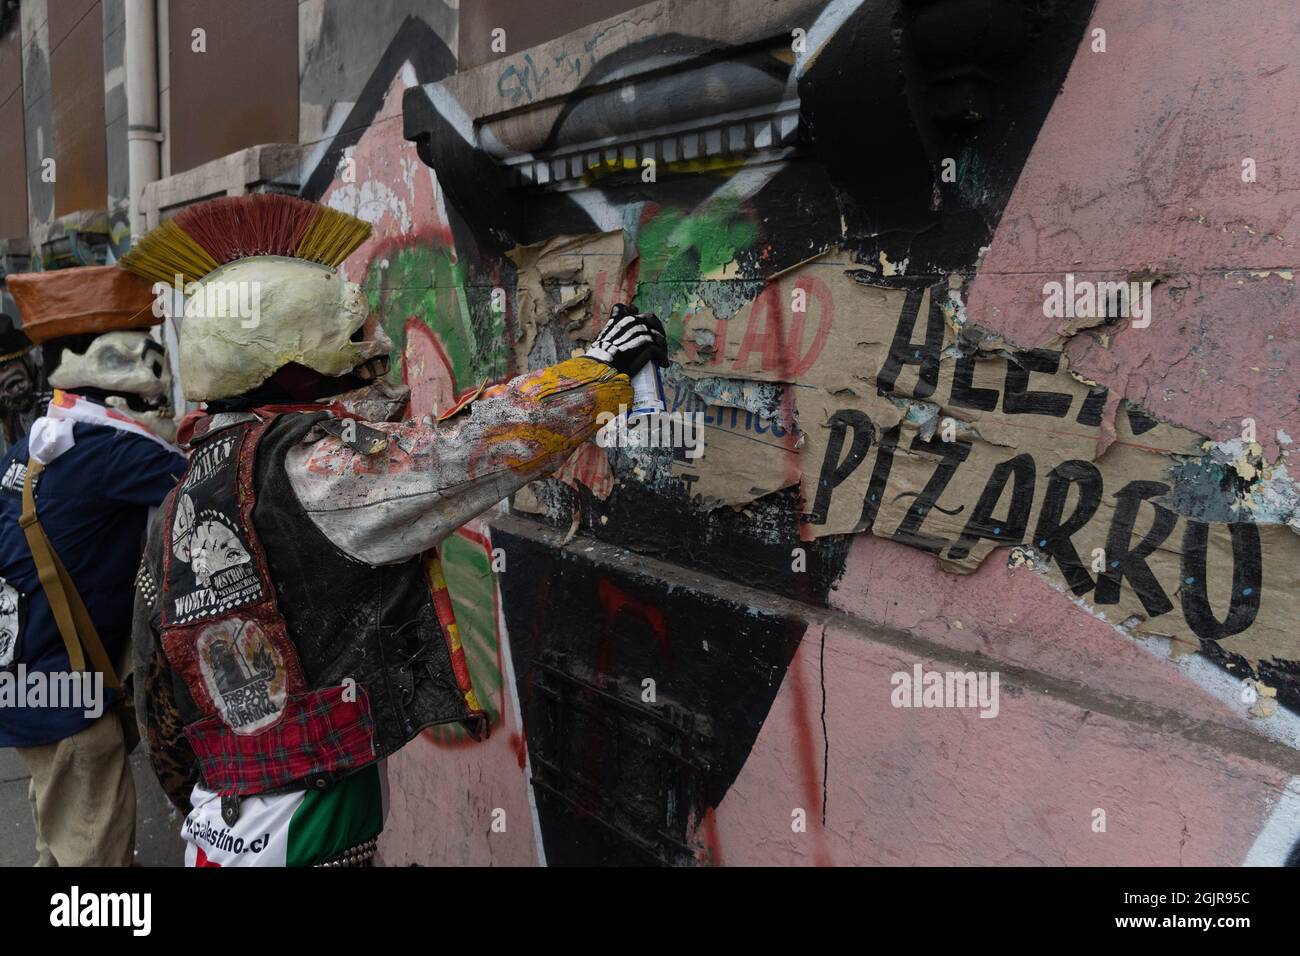 Santiago, Metropolitana, Chile. September 2021. Zwei verkleidete Menschen machen Graffiti, bei einer Demonstration in Santiago. Heute, am 11. September, jährt sich der Putsch in Chile zum 47. Mal und Salvador Allende zum Tode. (Bild: © Matias Basualdo/ZUMA Press Wire) Stockfoto